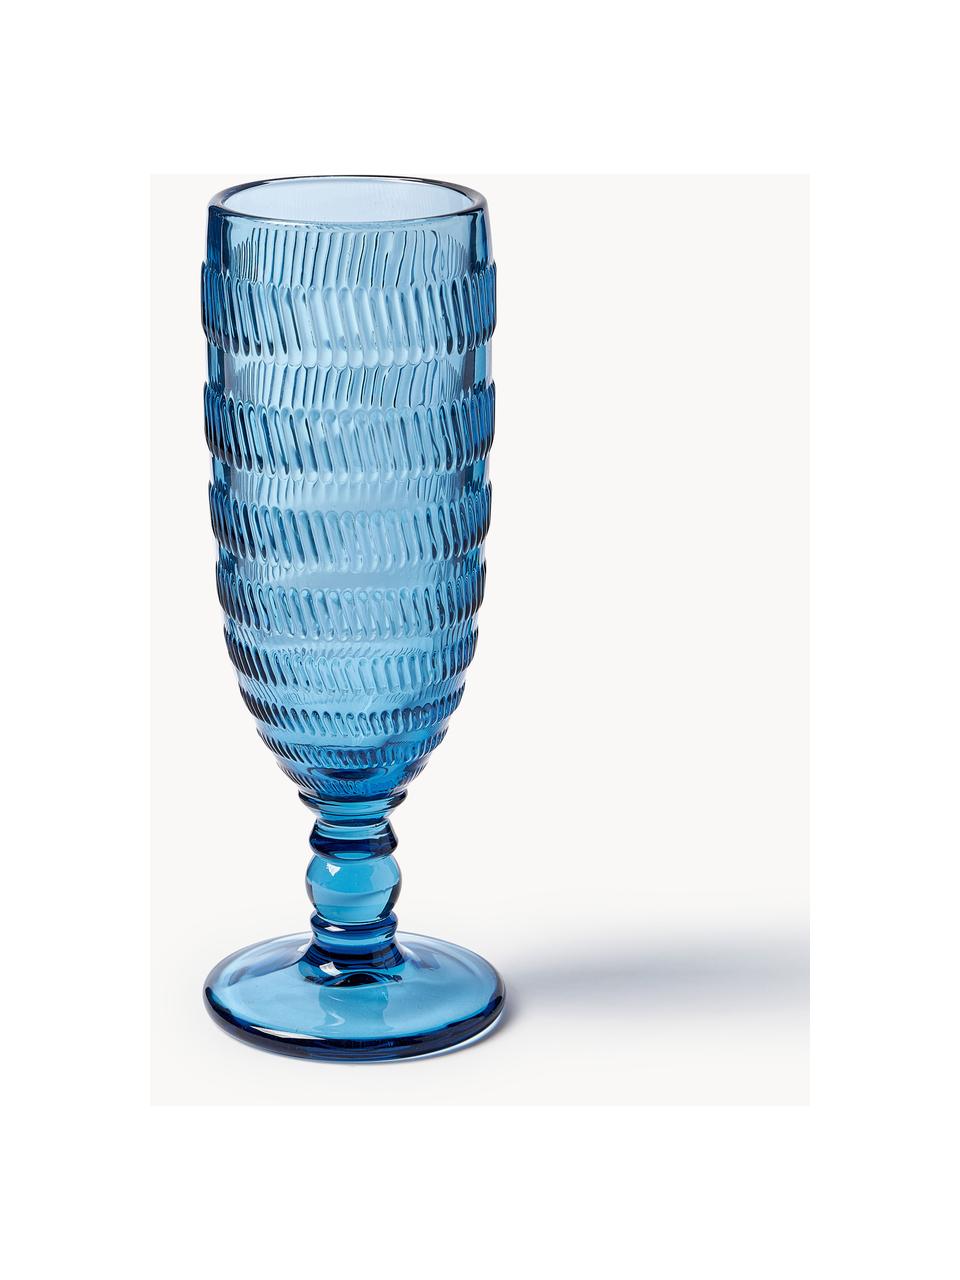 Set di 6 bicchieri da champagne con motivo in rilievo Geometrie, Vetro, Multicolore, Ø 6 x Alt. 18 cm, 160 ml